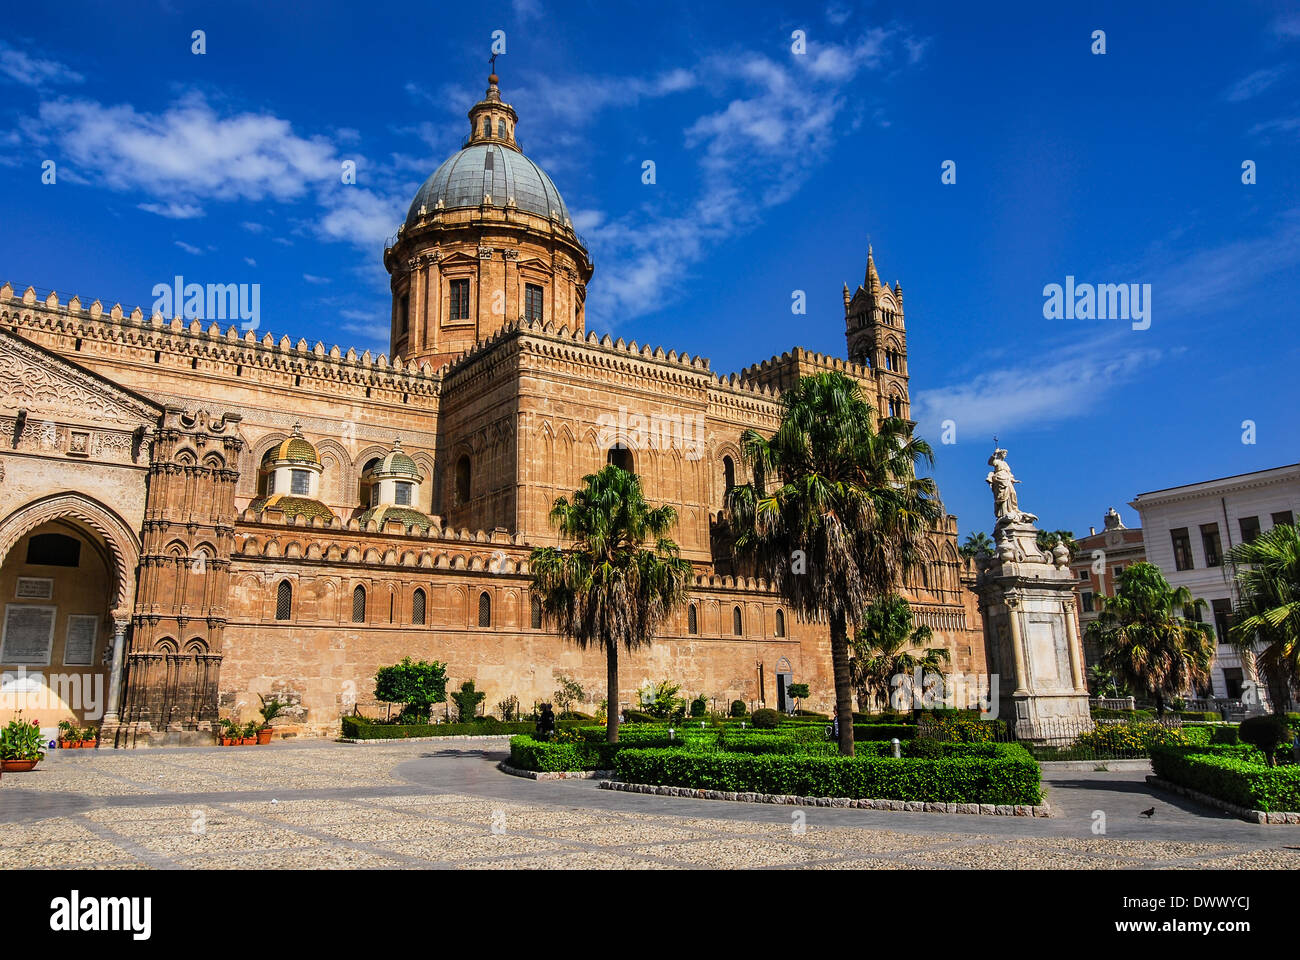 Palermo, Sicilia. La cattedrale è stata costruita in struttura normanna nel 1179. Duomo di Santa Maria Assunta, punto di riferimento dell'Italia. Foto Stock